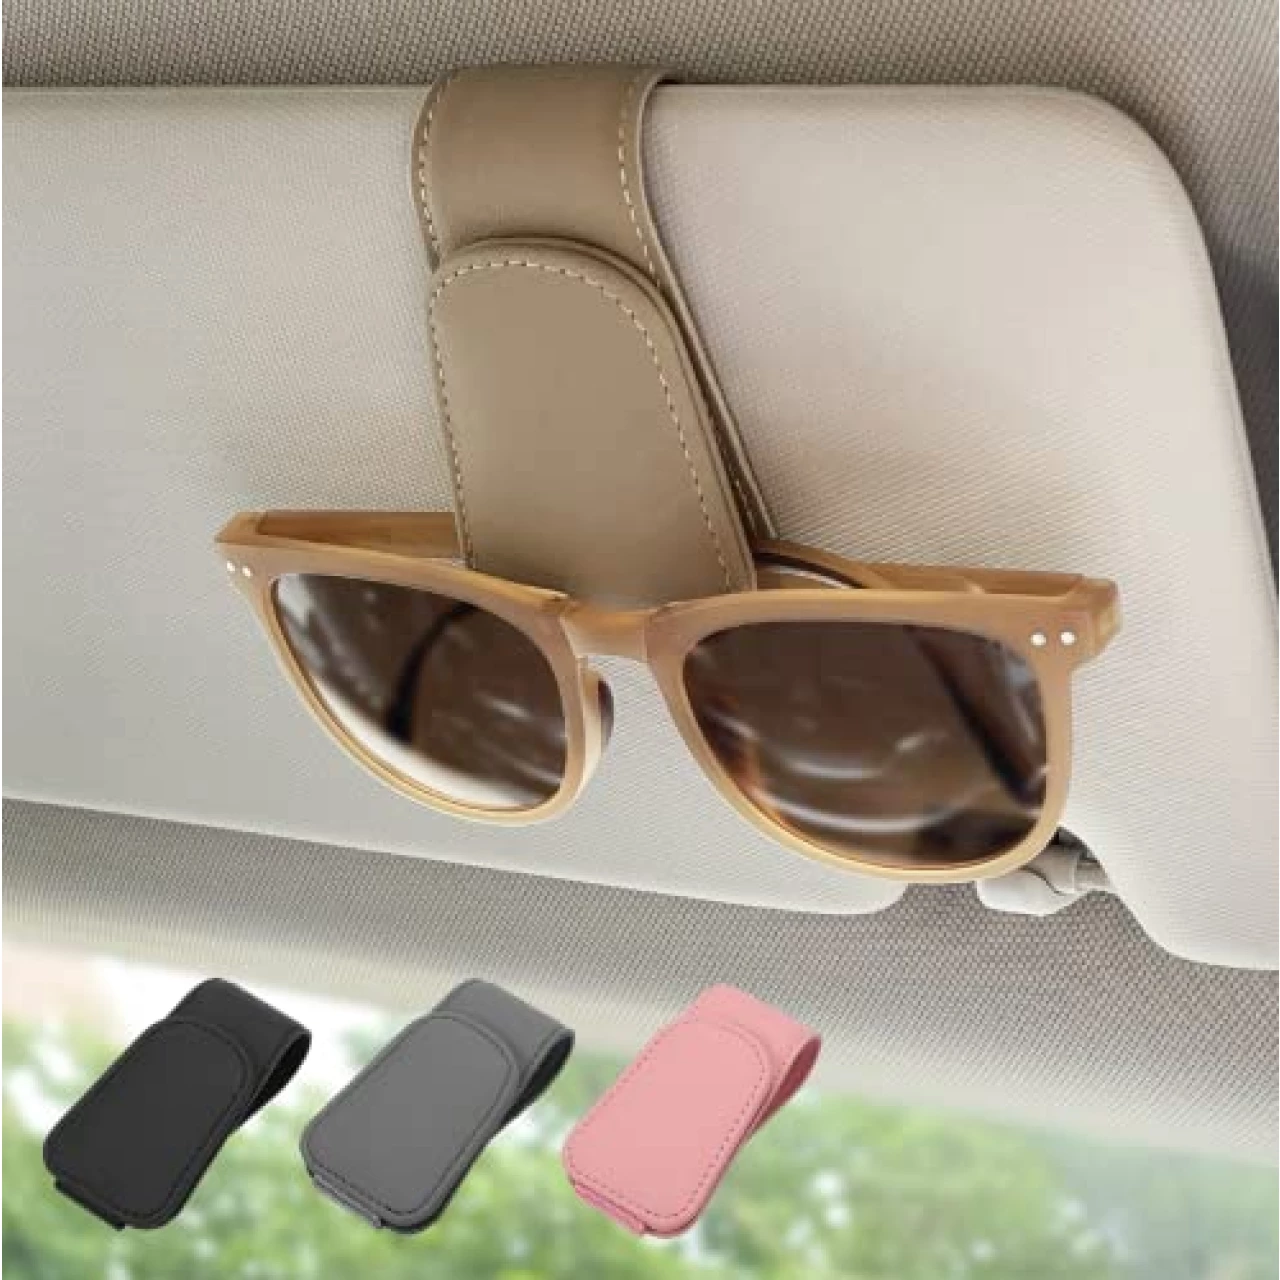 Ompellus Magnetic Leather Sunglass Holder, Eyeglass Hanger Clip for Car Sun Visor